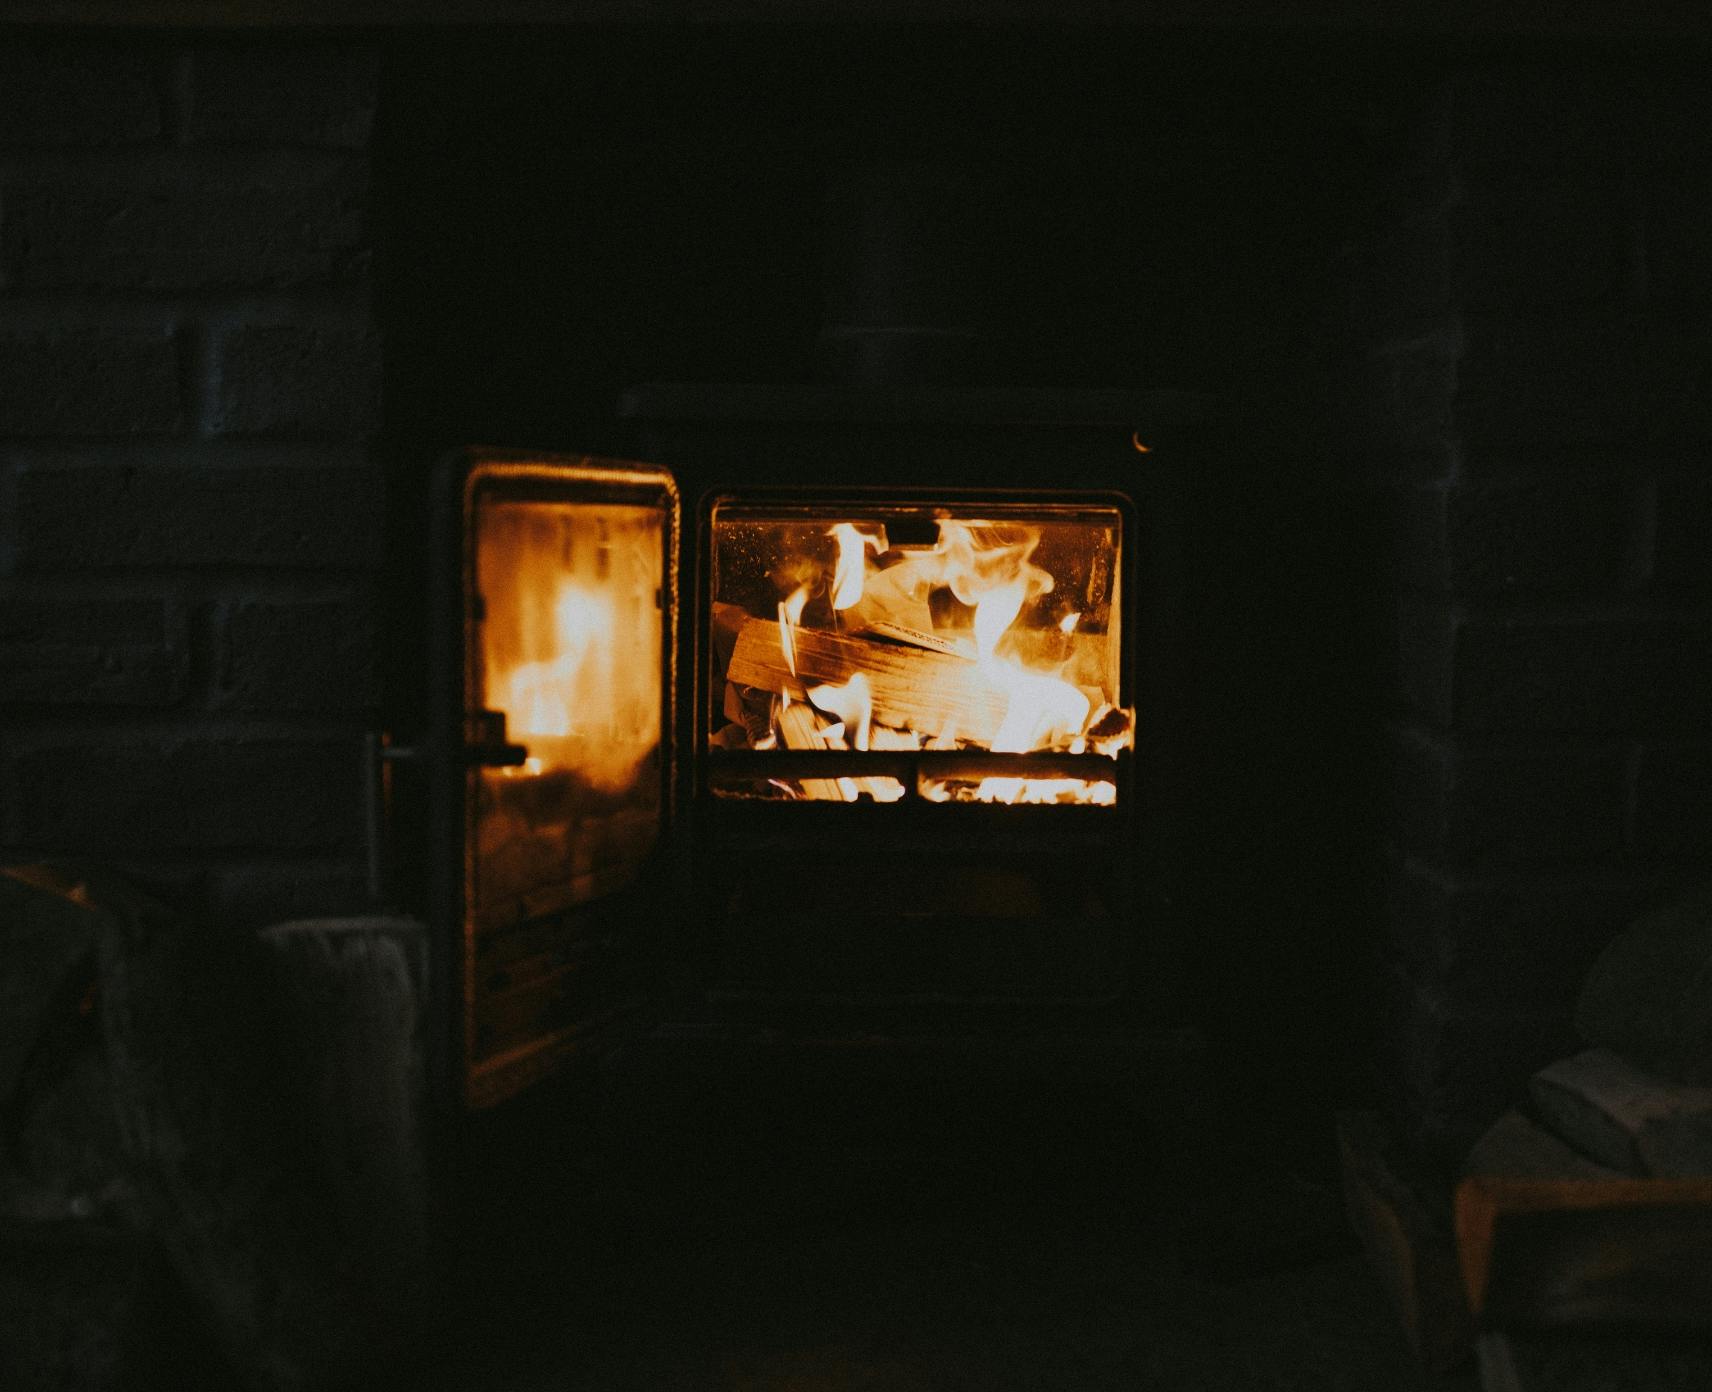 A wood burner